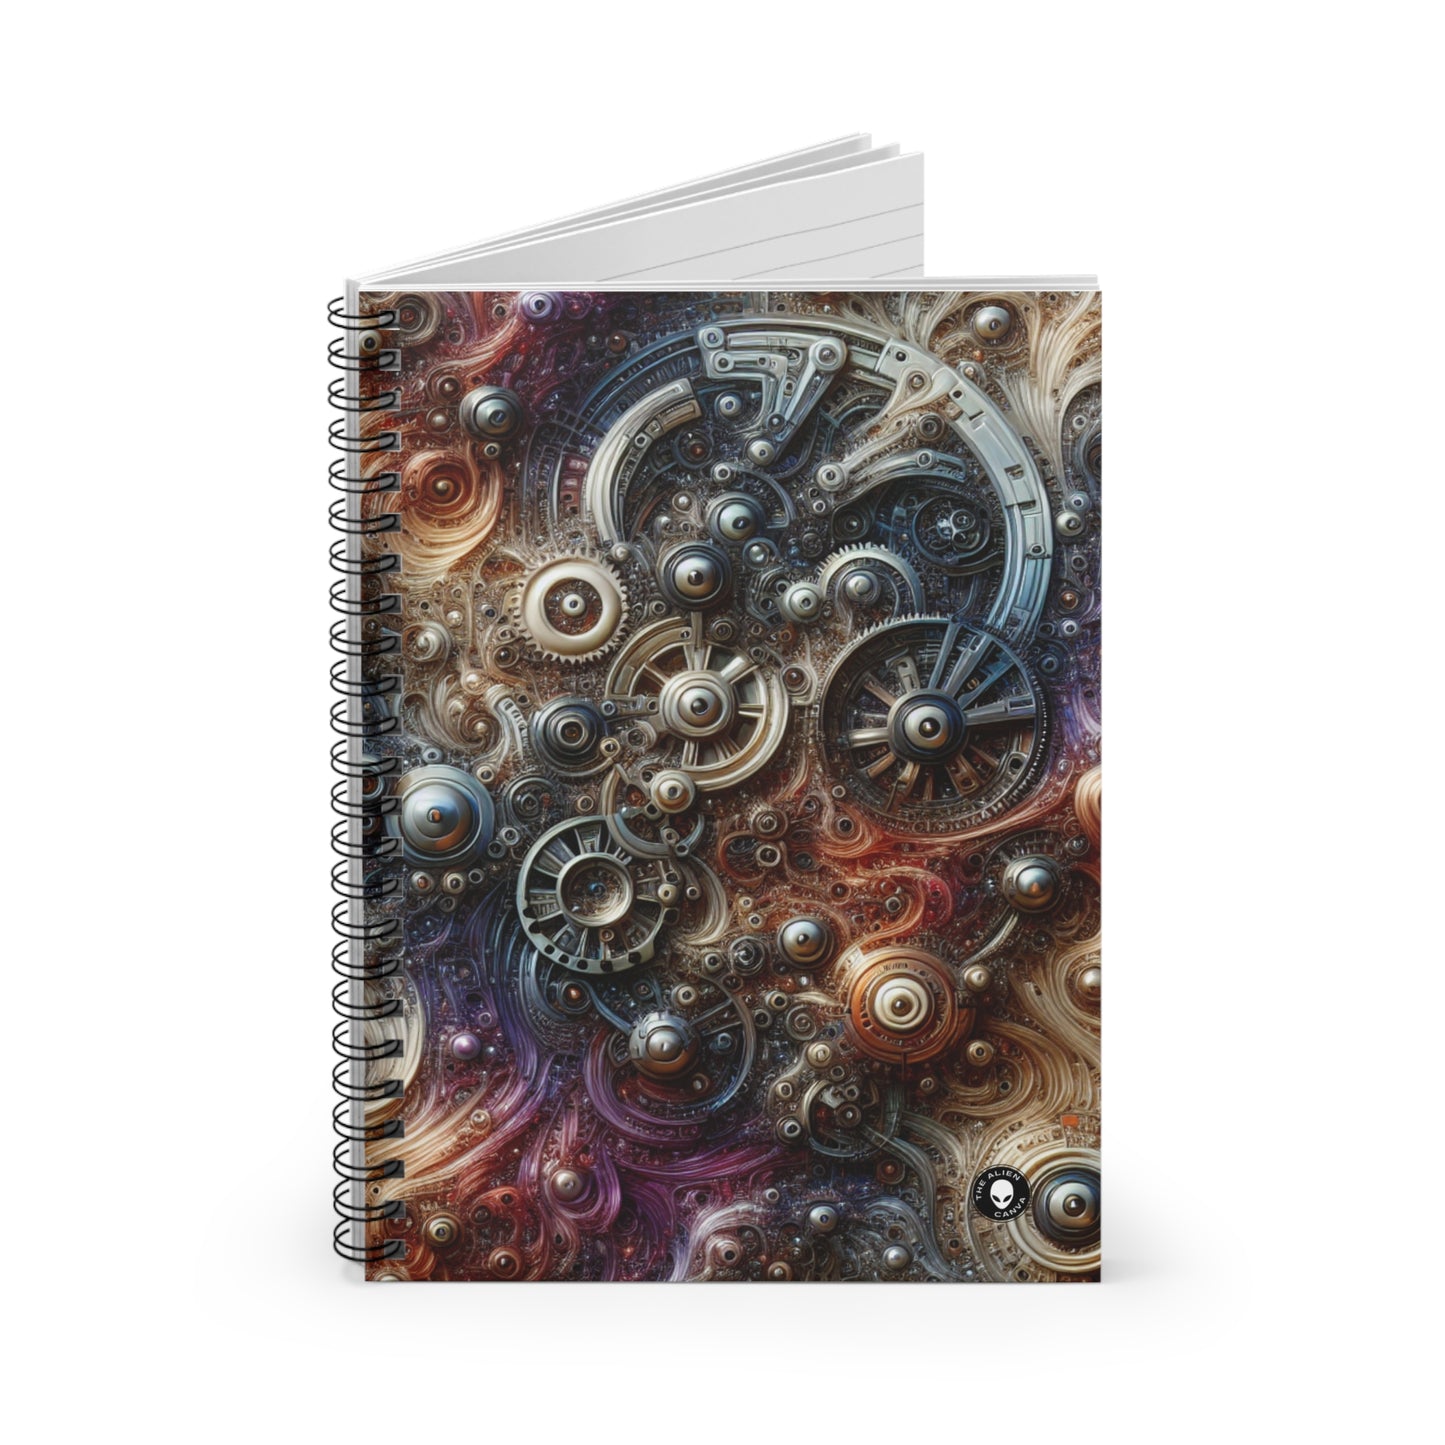 "Centinela cibernético: una fusión futurista del hombre y la máquina" - El cuaderno de espiral alienígena (línea reglada) Arte biomecánico